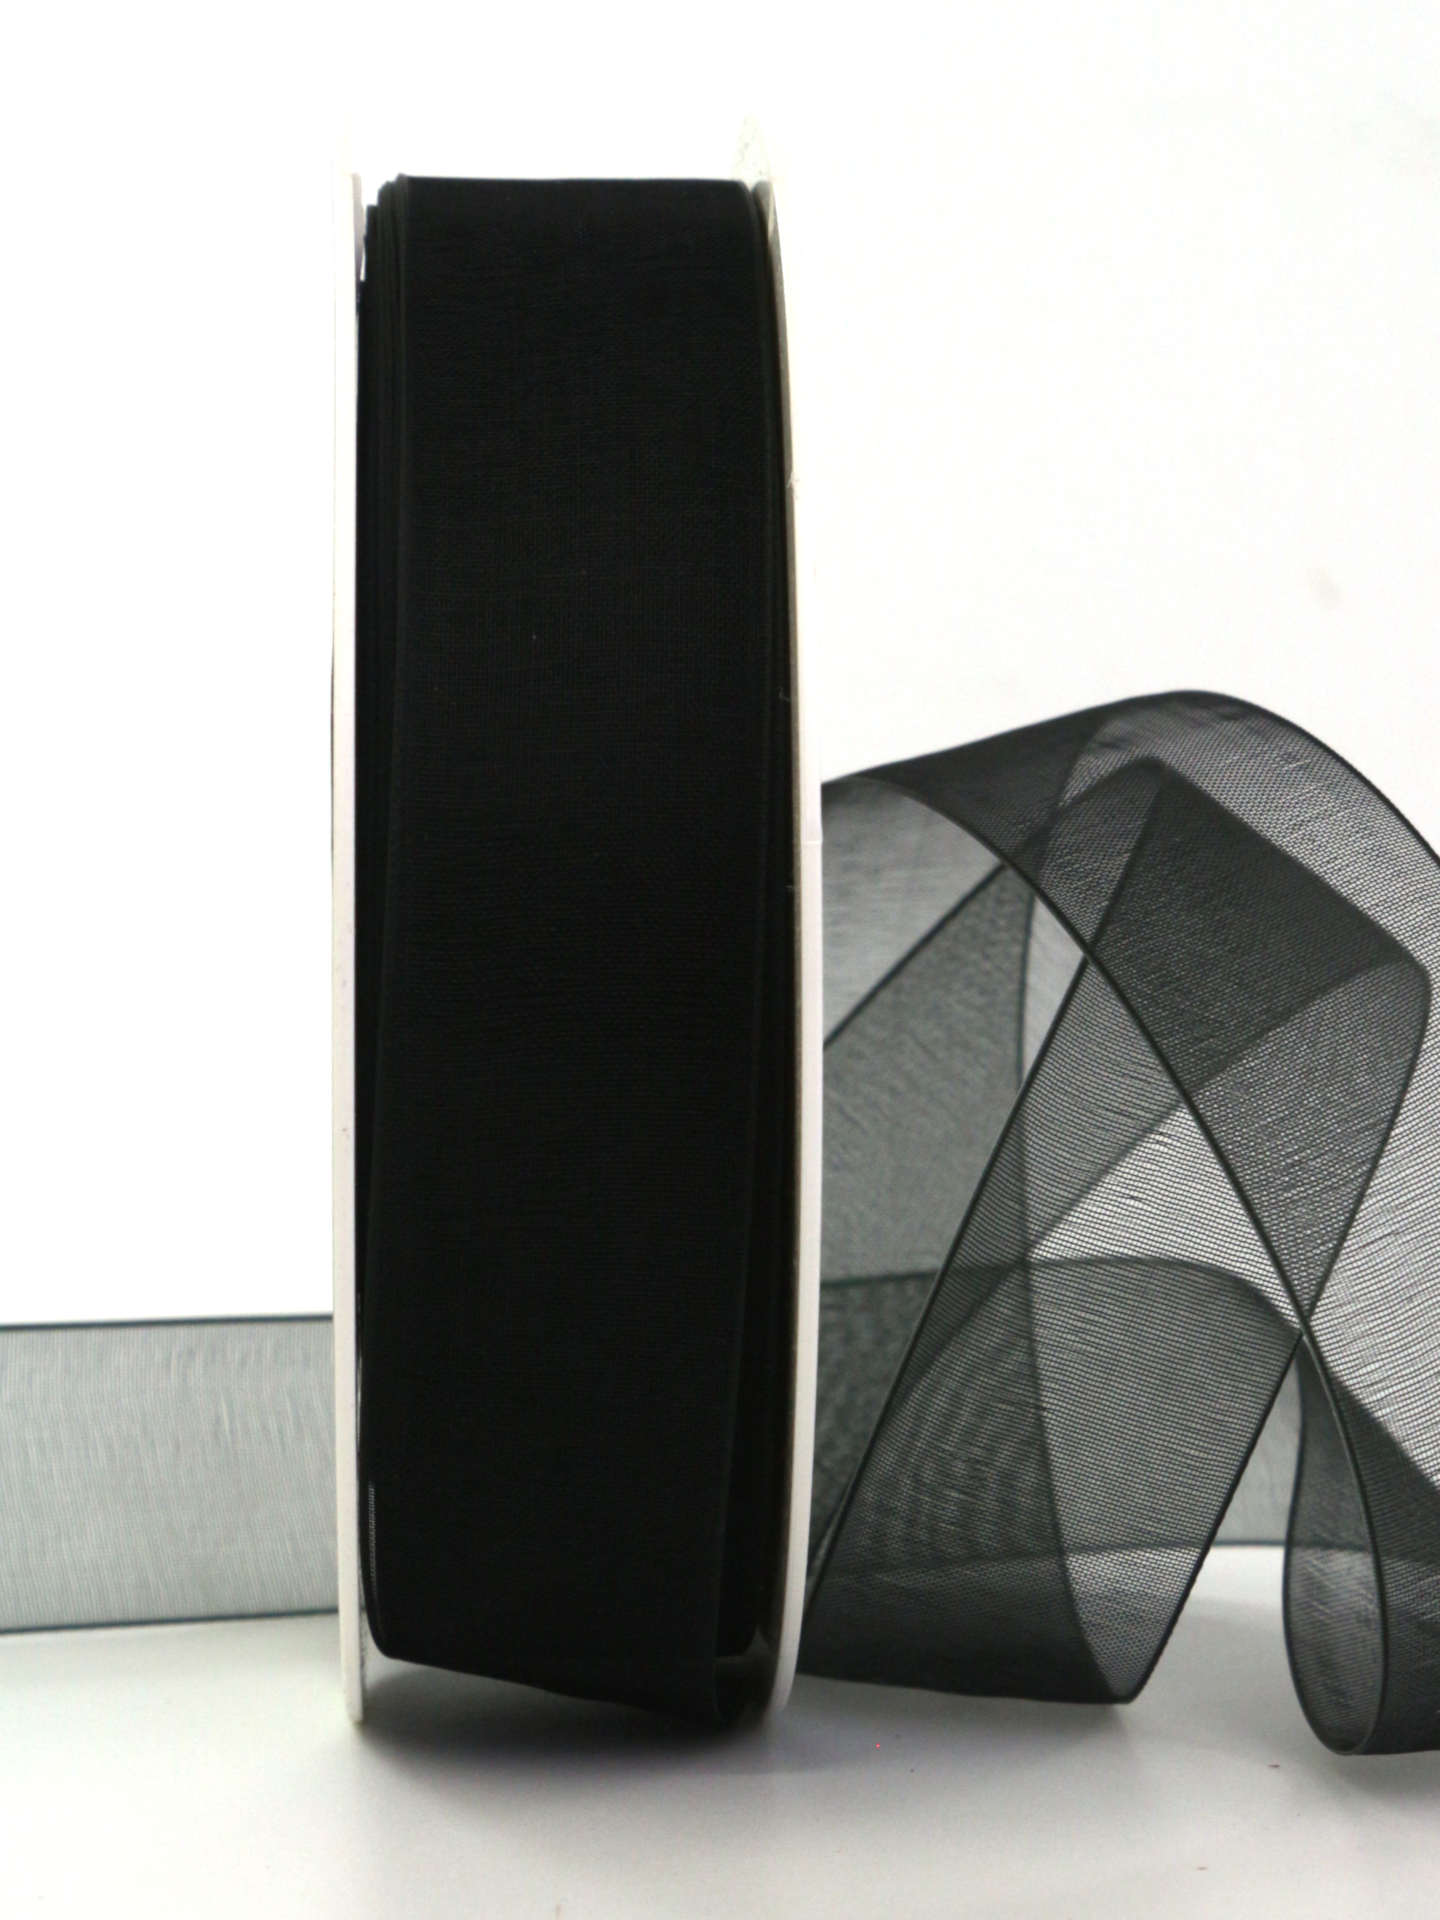 Organzaband mit Webkante, schwarz, 25 mm breit, 50 m Rolle - geschenkband, geschenkband-fuer-anlaesse, anlasse, trauerband